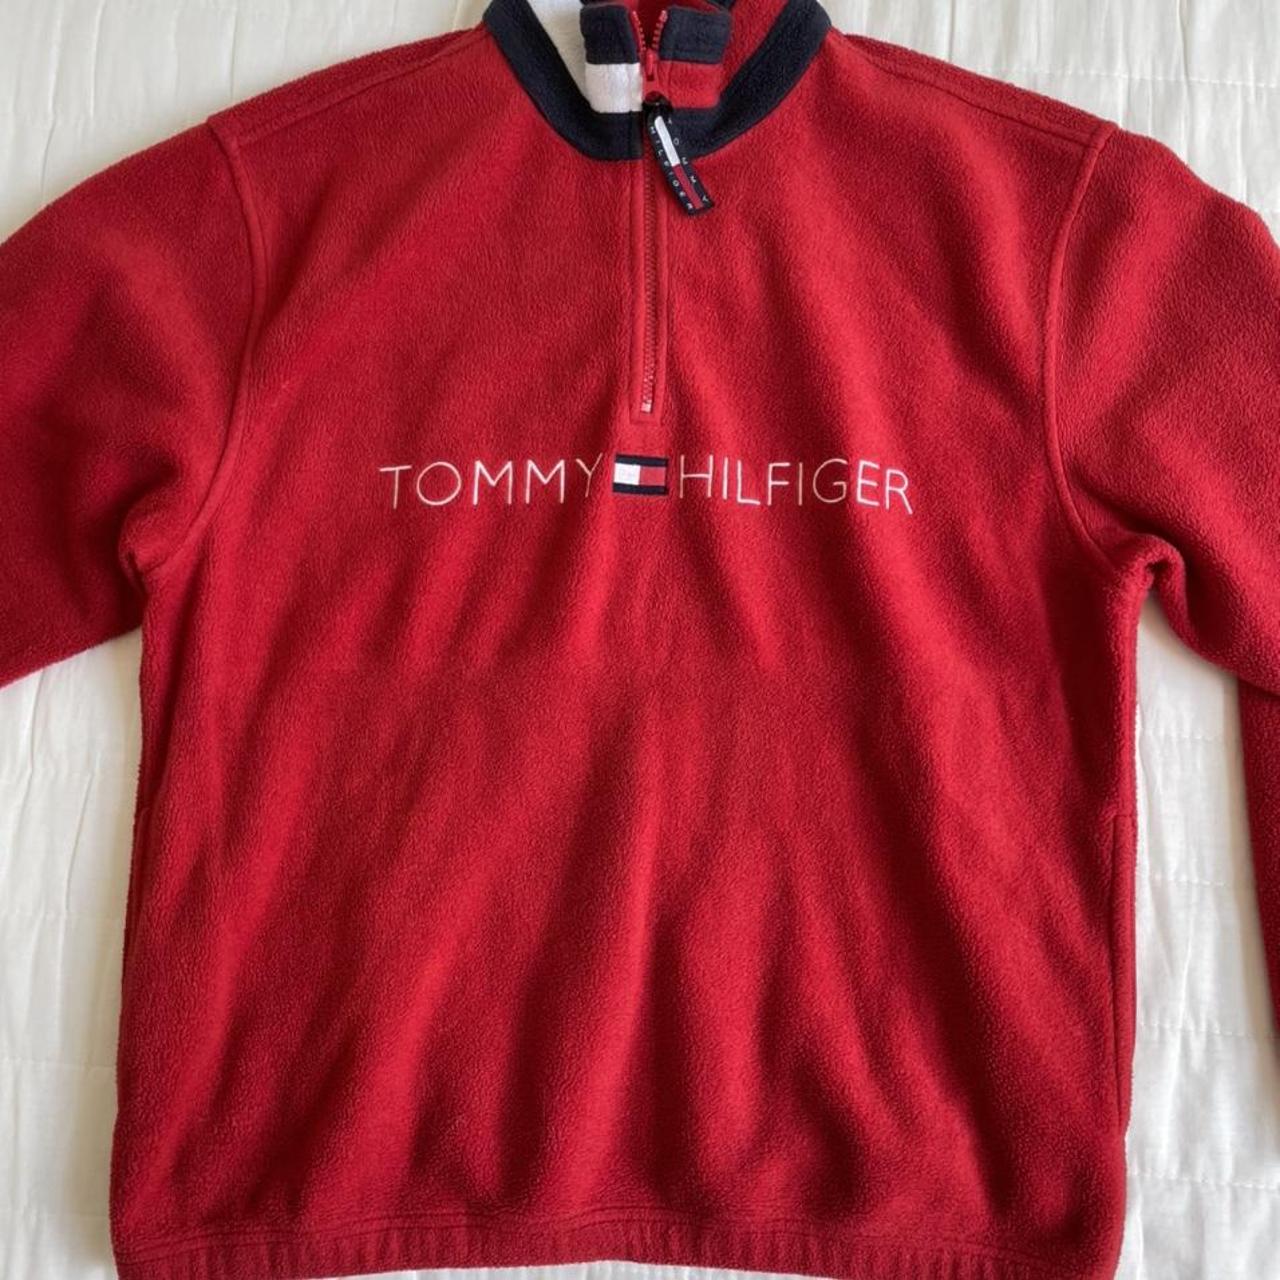 Tommy Hilifiger vintage fleece in red. Men’s size... - Depop